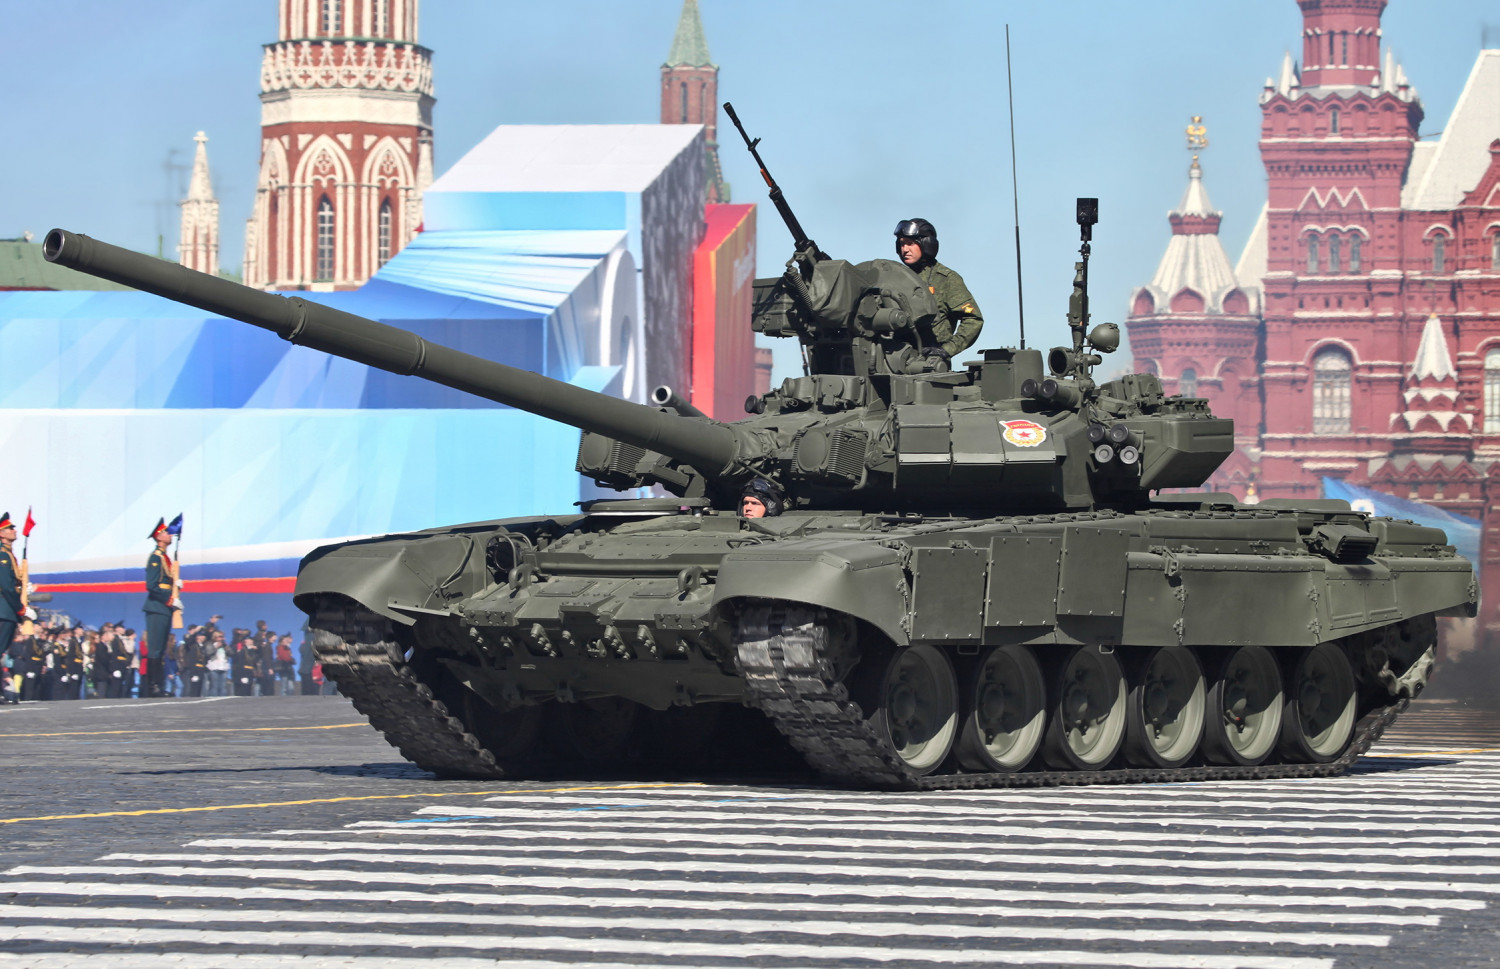 Xe tăng T-90 chưa chắc đã chống lại các vũ khí chống tăng cá nhân hiện đại một cách hữu hiệu - Ảnh: wikipedia